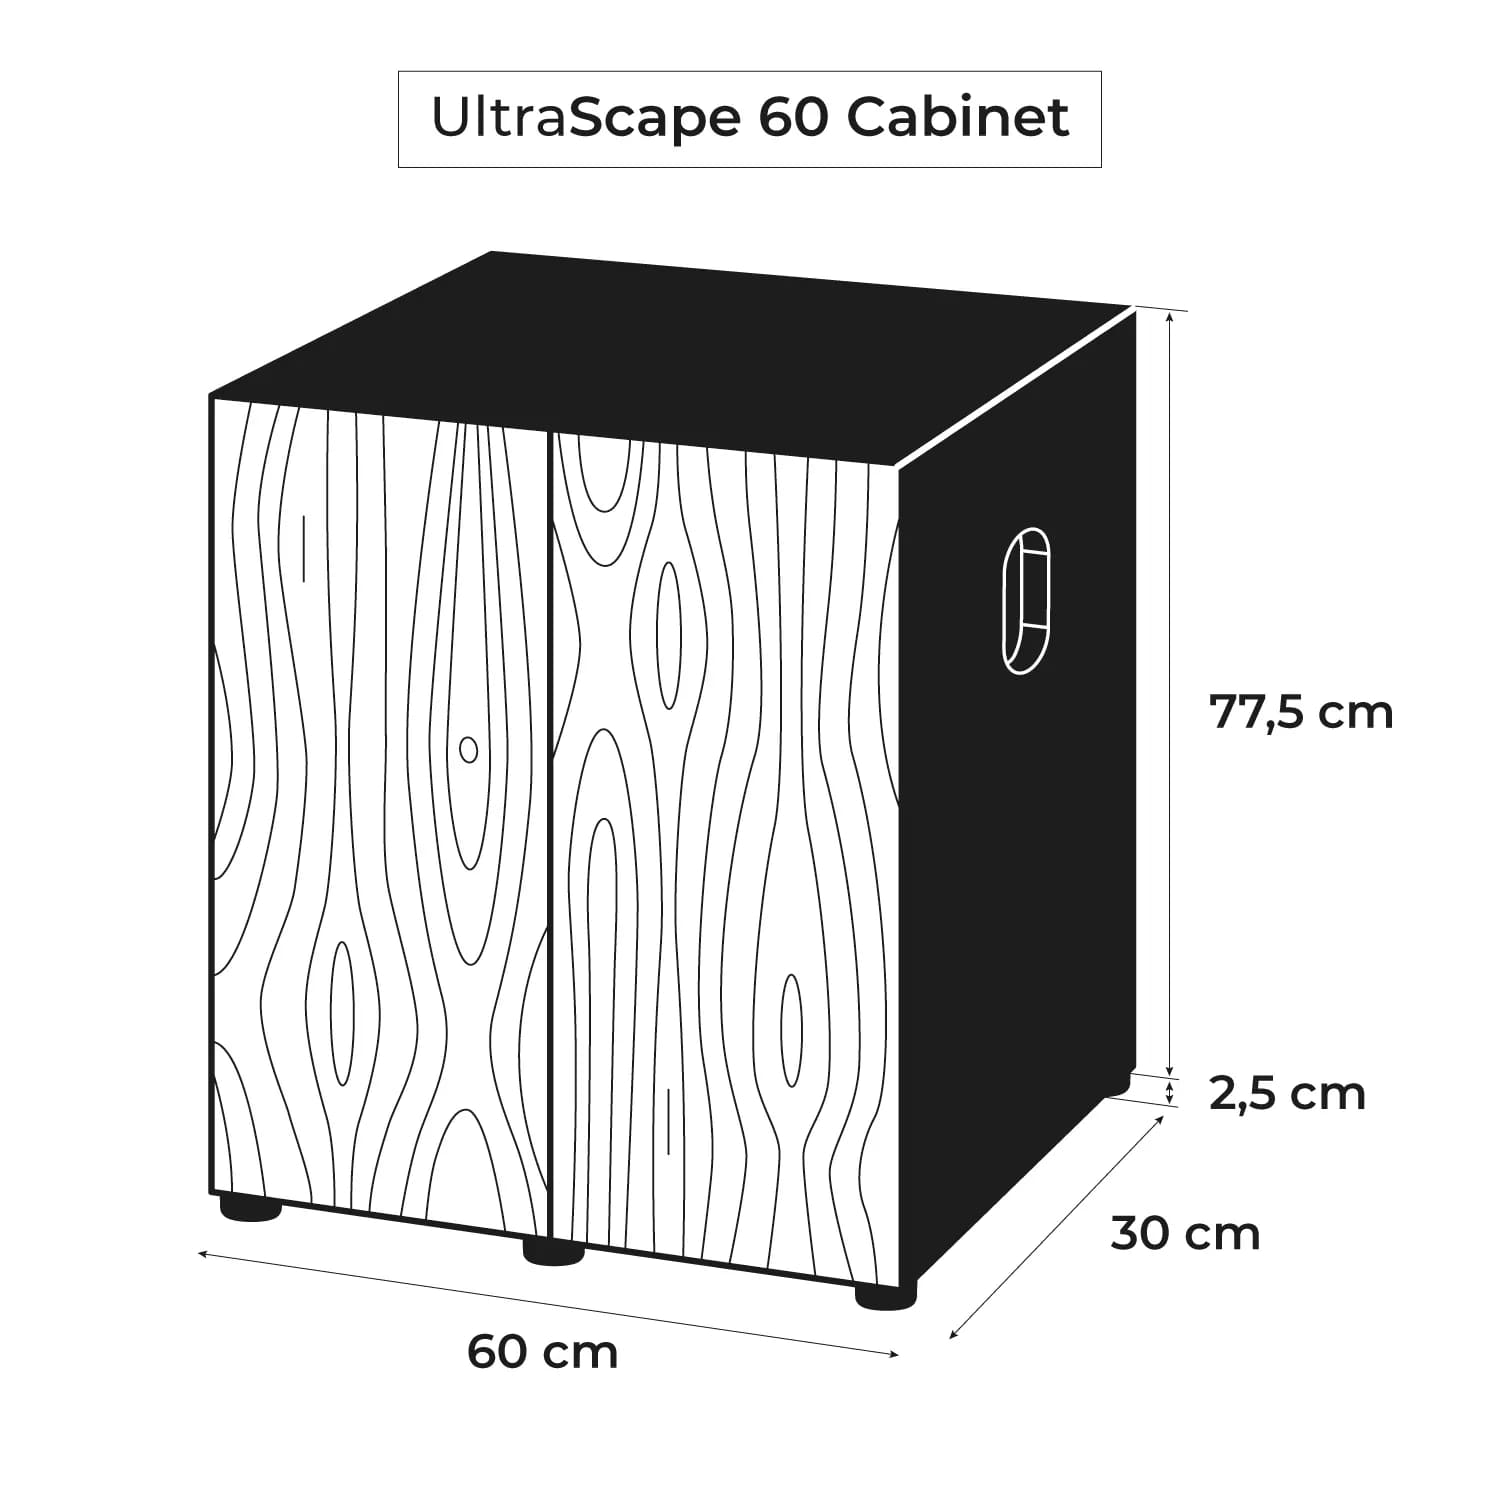 aquael-meuble-ultrascape-60-forest-dimensions-60-x-30-x-80-cm-pour-aquarium-4